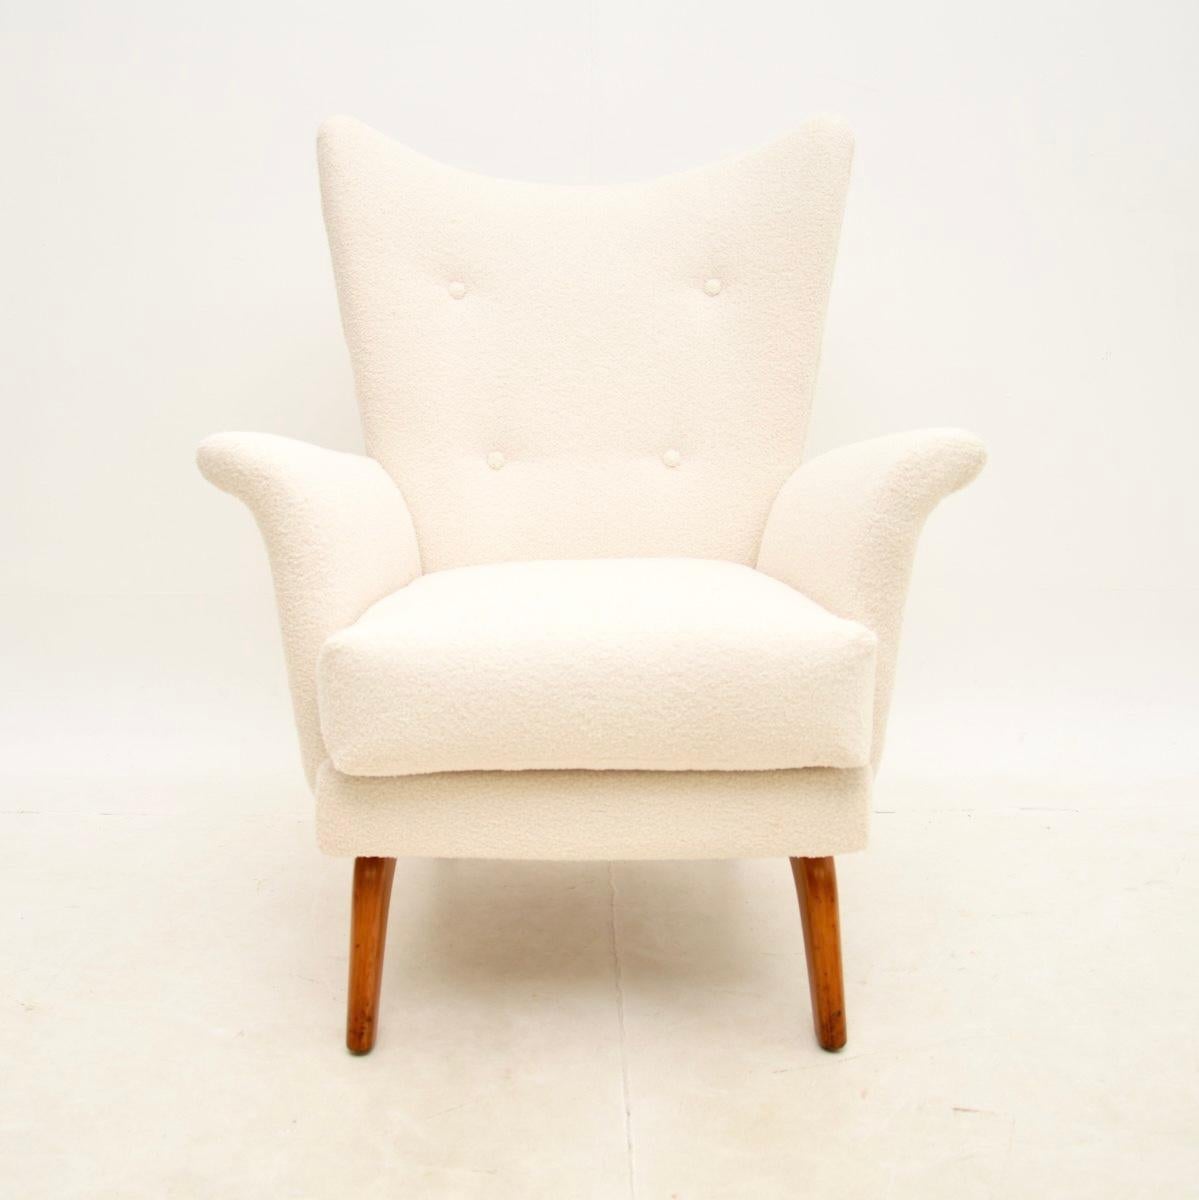 Ein sehr stilvoller und äußerst bequemer Vintage-Sessel von Howard Keith. Es wurde in England hergestellt und stammt aus den 1960er Jahren.

Er ist von erstaunlicher Qualität und hat eine angenehme Größe, recht klein und kompakt, bietet aber dennoch